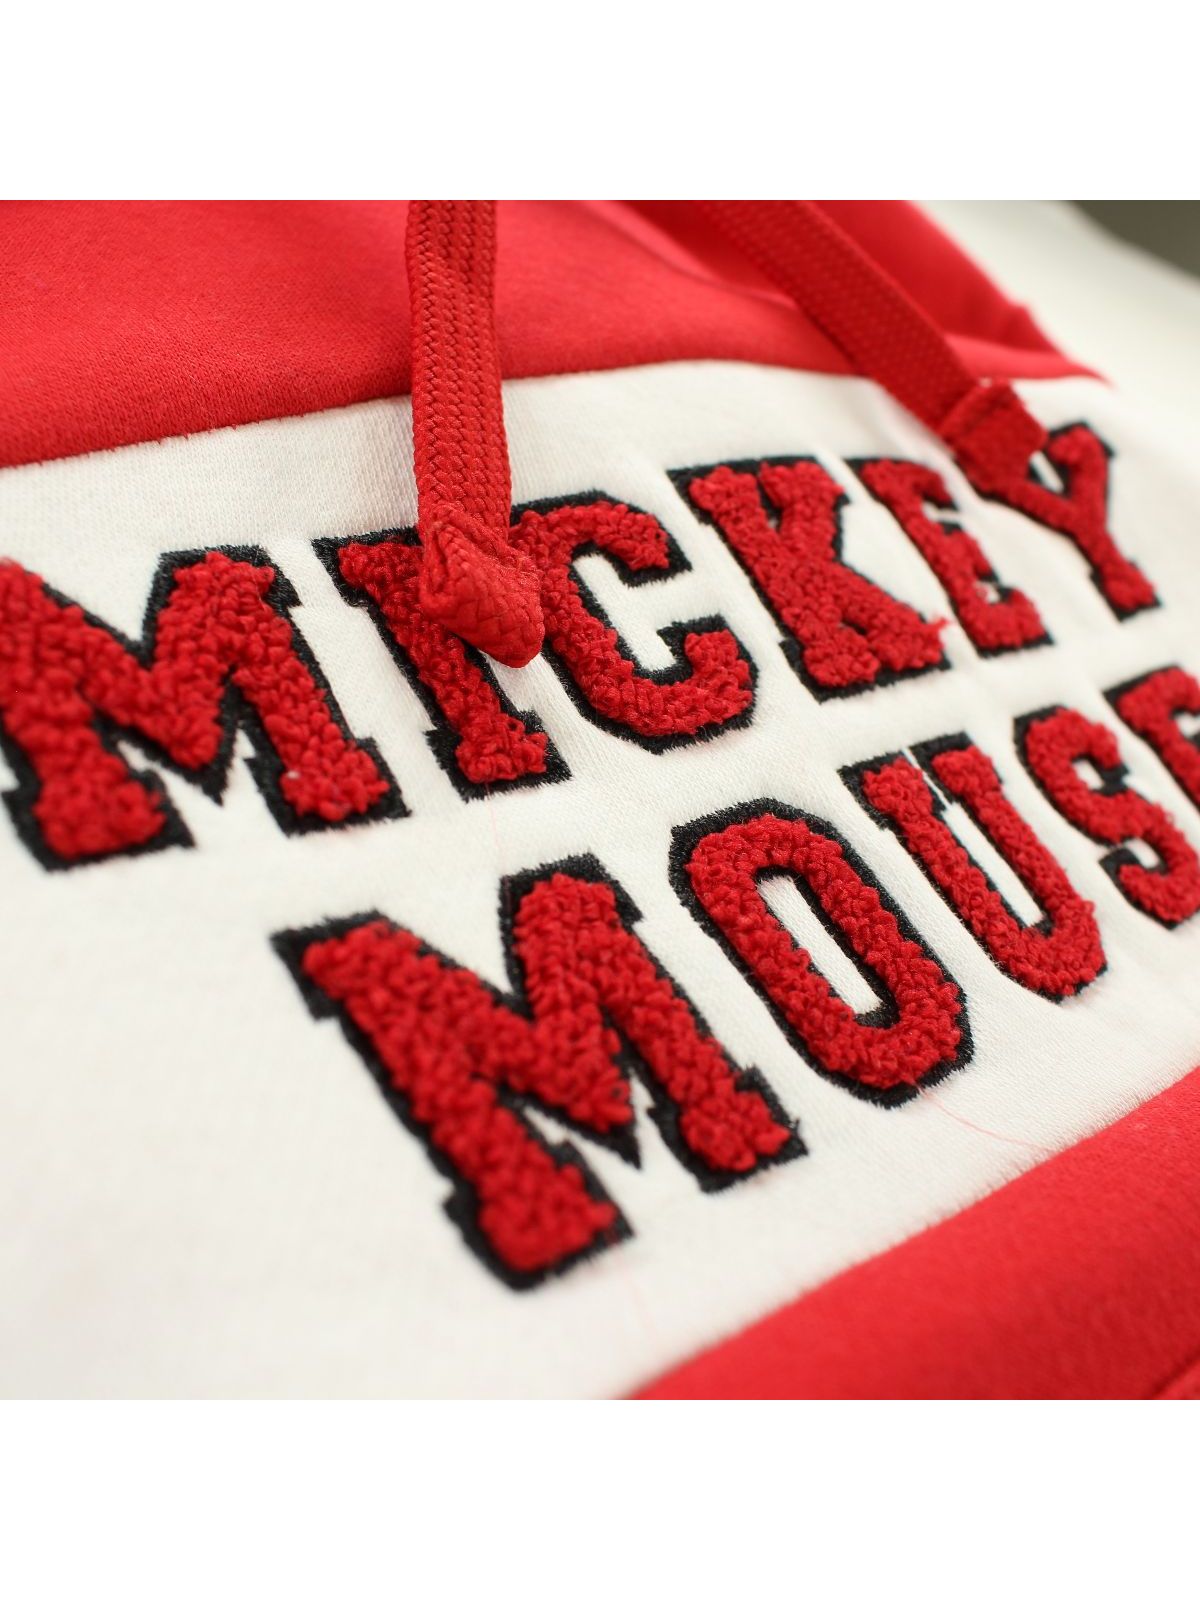 Sweatshirt met capuchon van Mickey